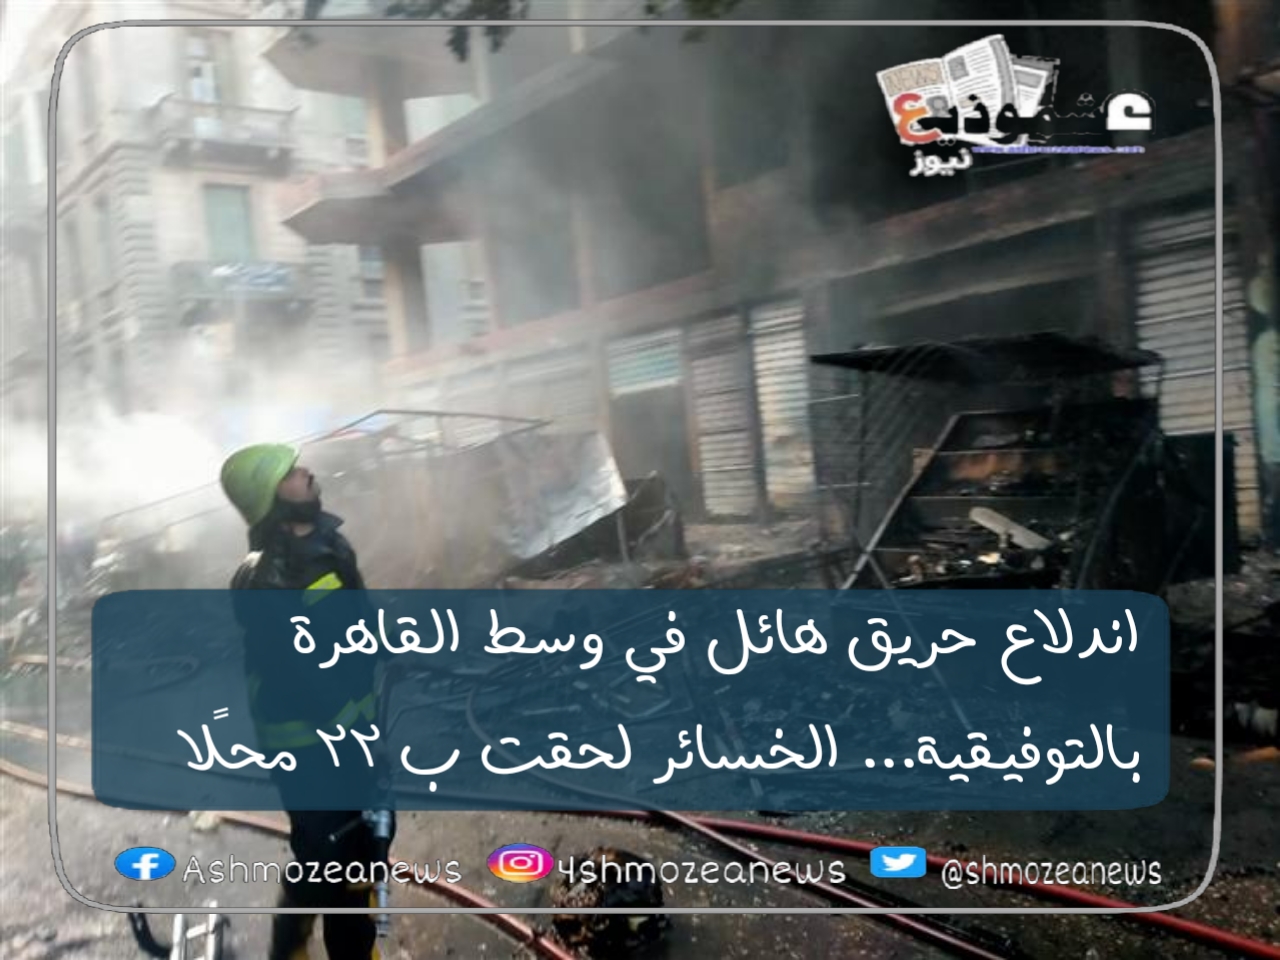 اندلاع حريق هائل في وسط القاهرة بالتوفيقية... الخسائر لحقت ب 22 محلًا